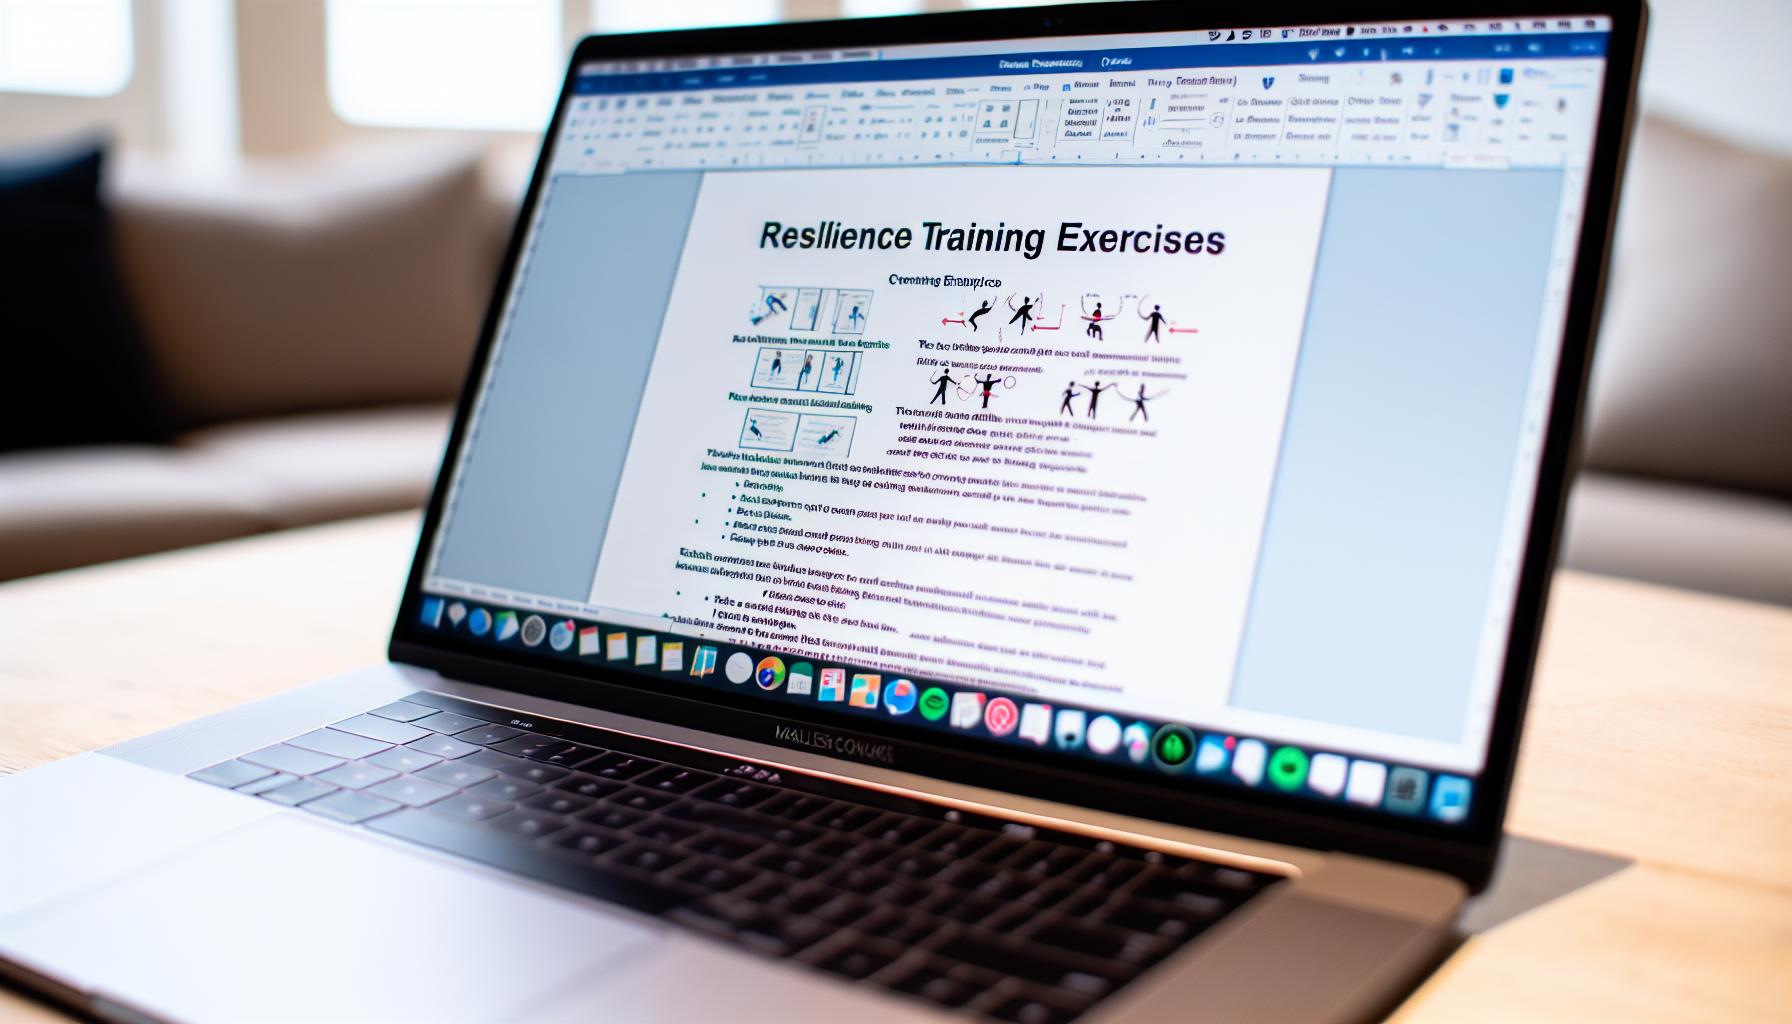 Dokument geöffnet auf einem Laptop, zeigt Resilienztraining Übungen für Mitarbeiter